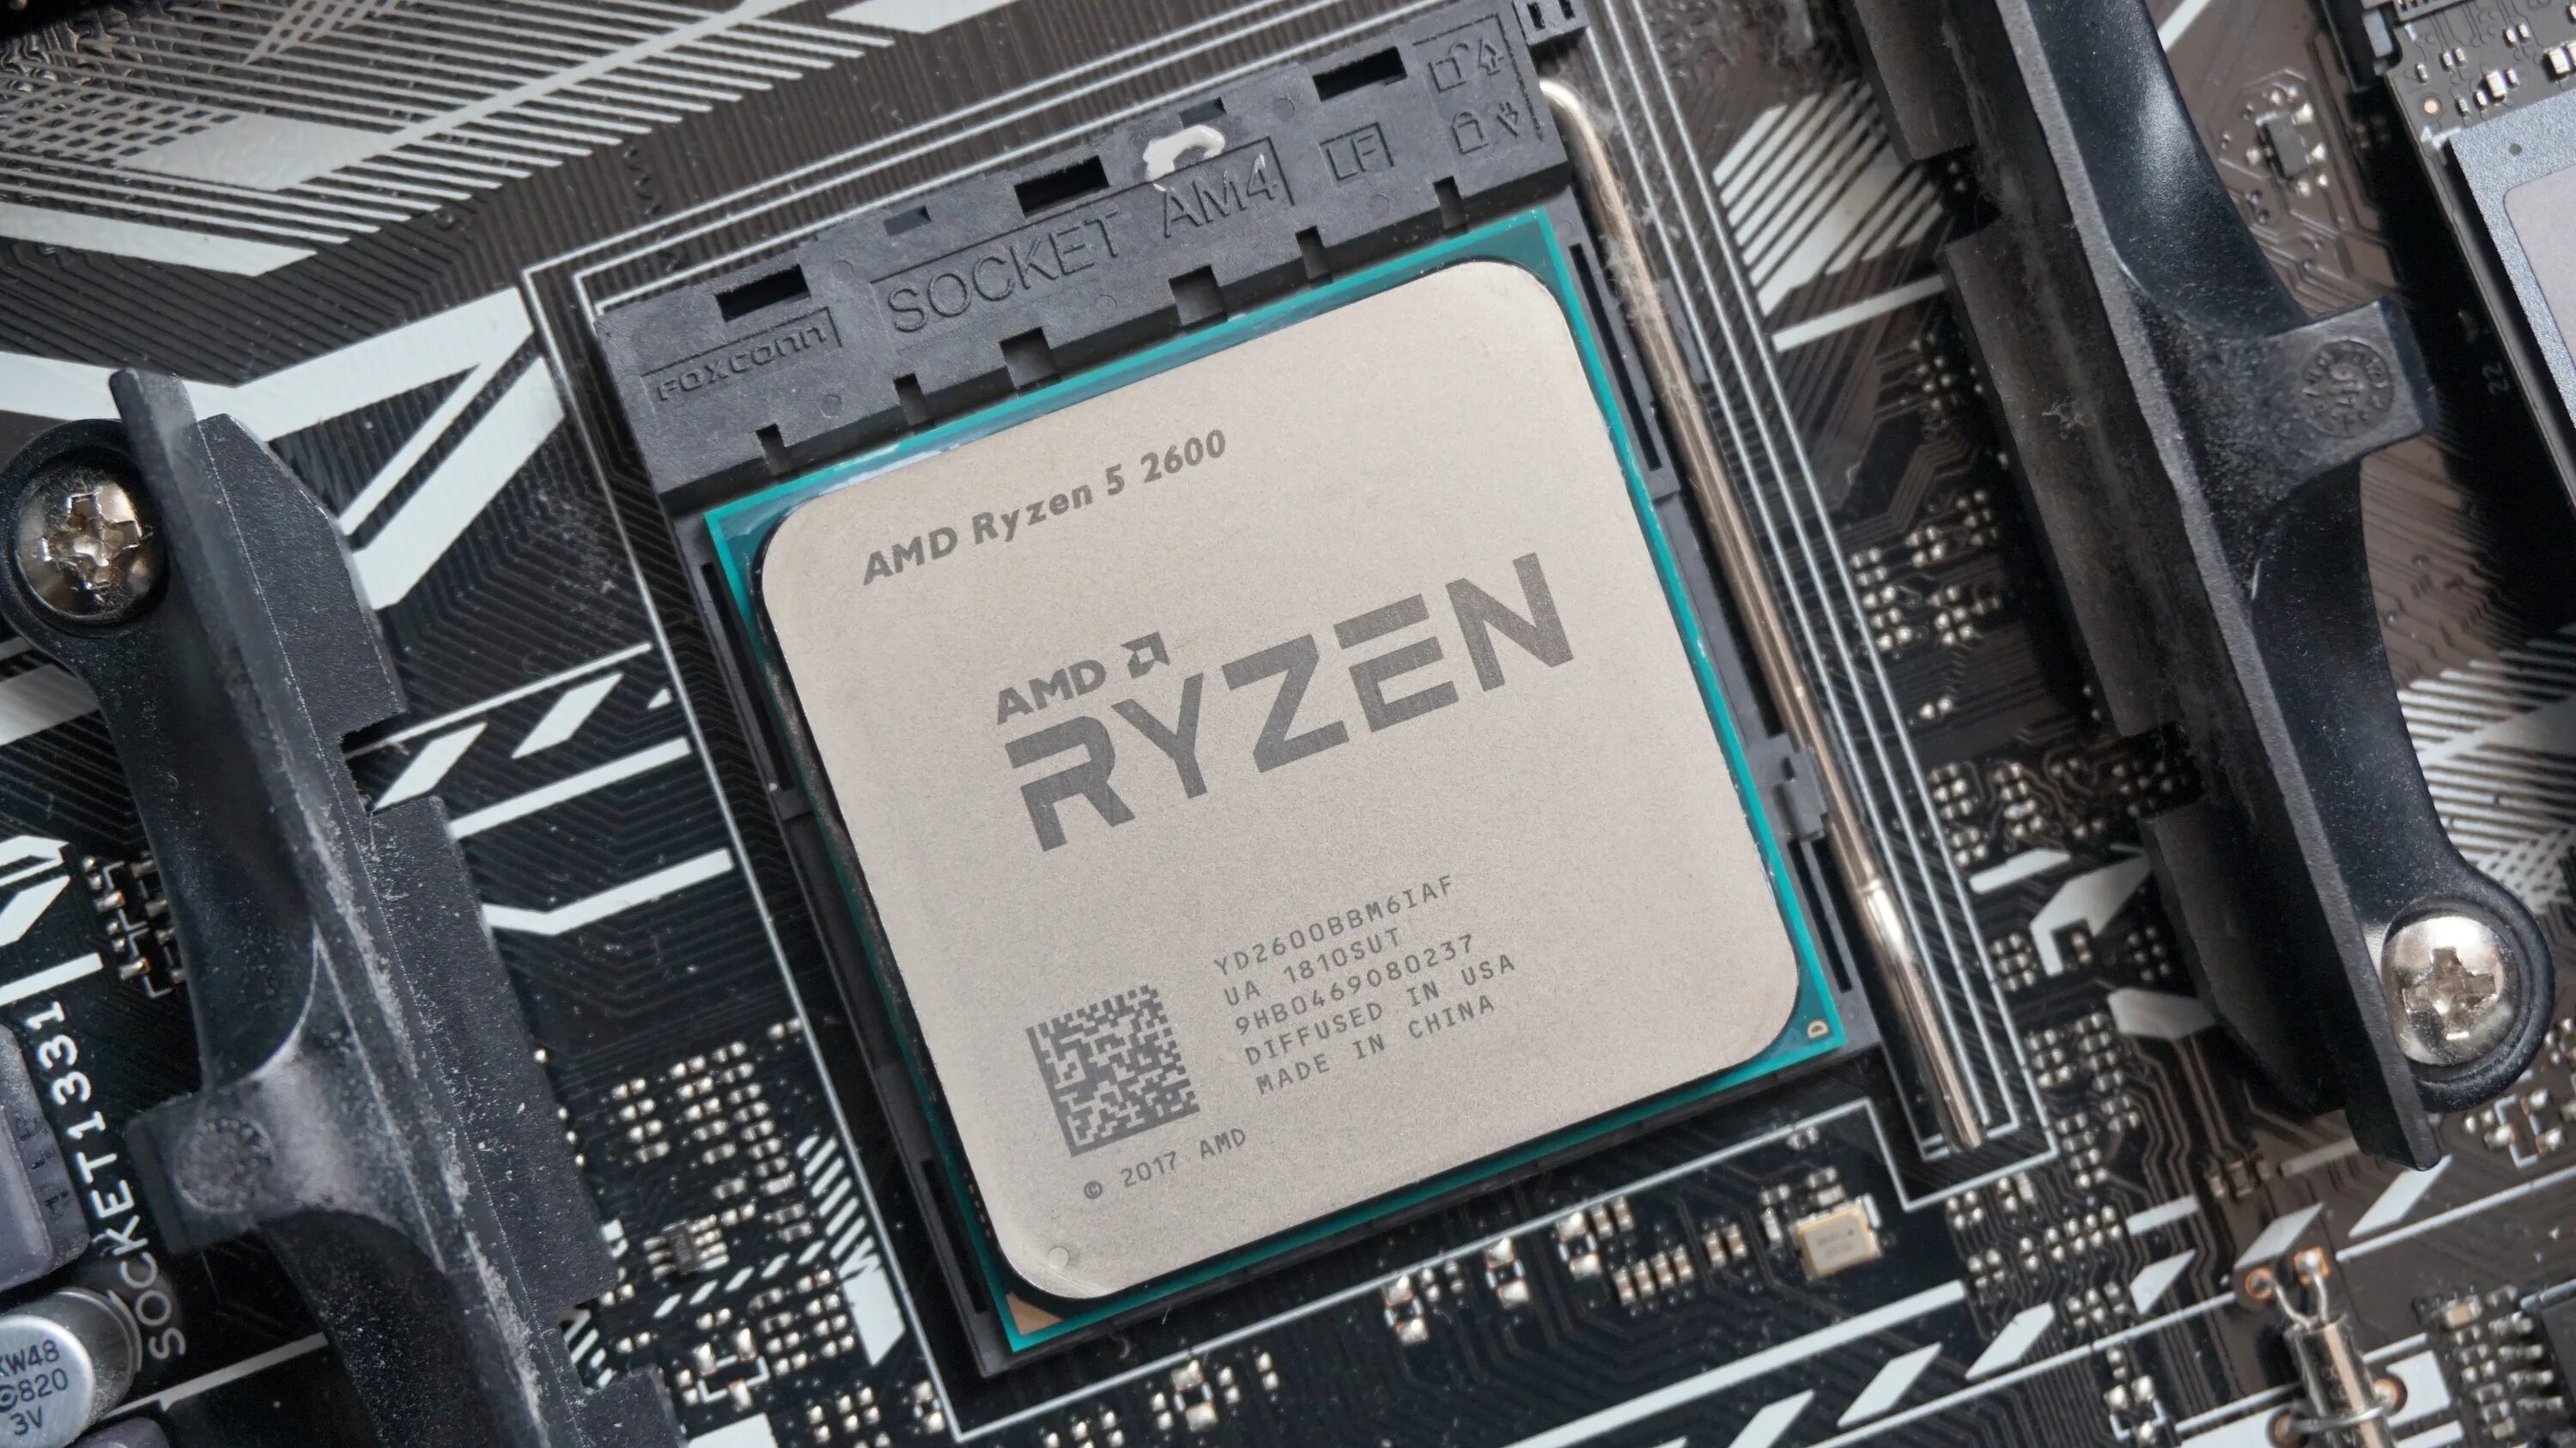 Ryzen 5 2600 память. Ryzen 5 2600. Процессор АМД 5 2600. Процессор AMD Ryzen 5 2600 am4. AMD процессор r5 2600 OEM.